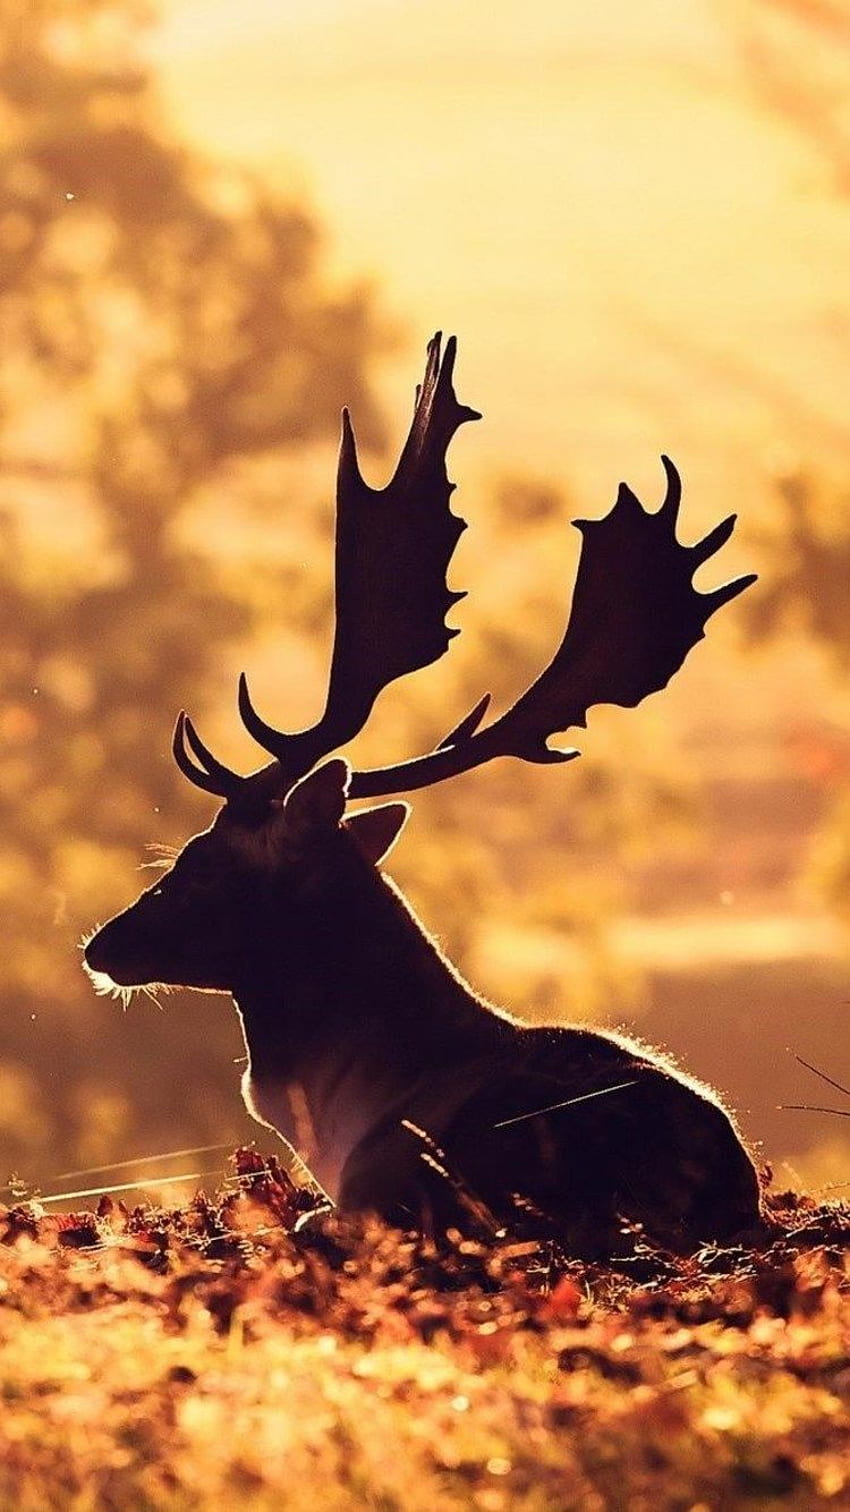 Minimalist Sunrise Deer Silhouette HD 4K Wallpaper #8.1396